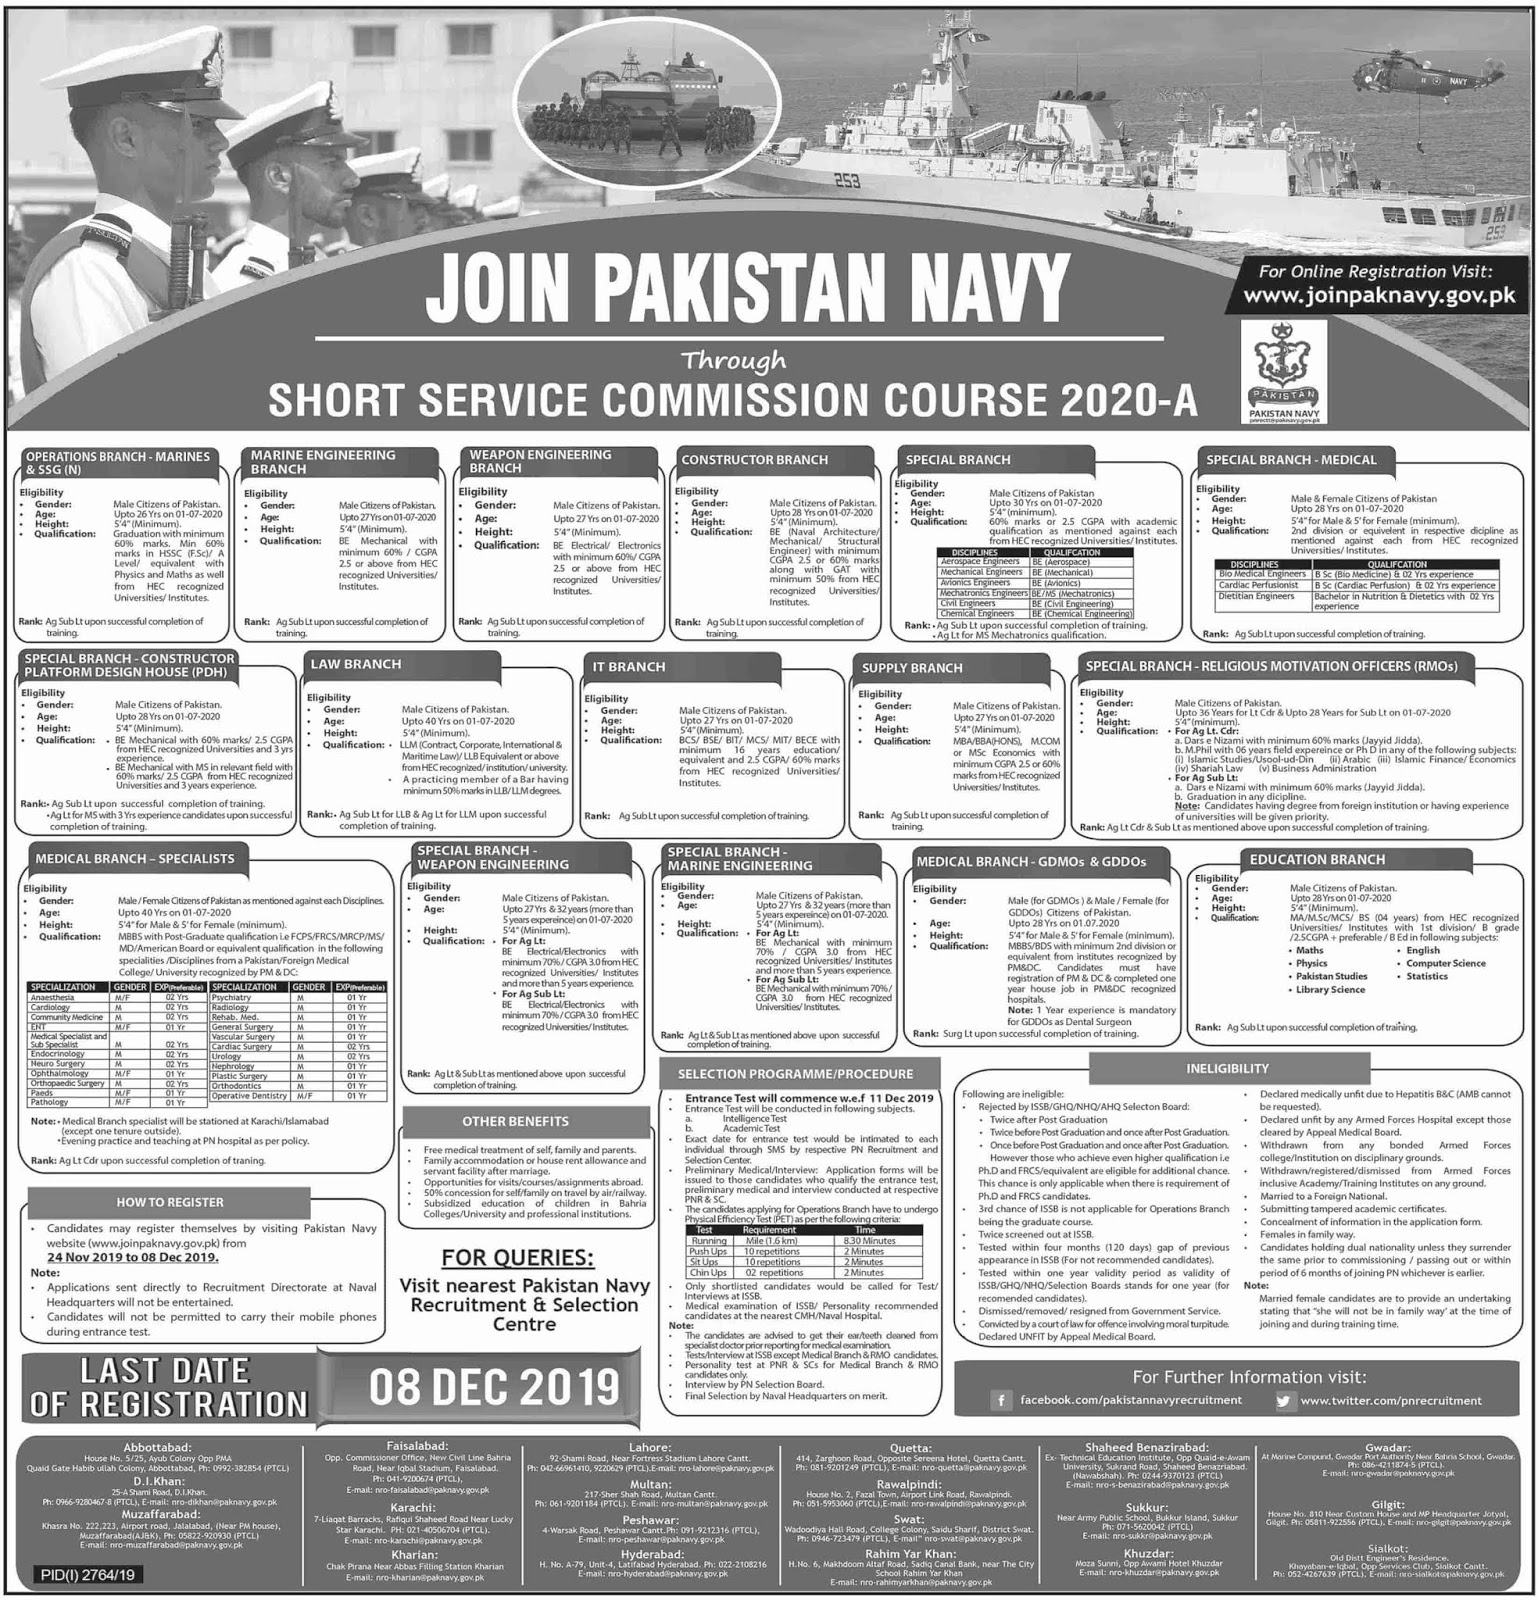 Visit to Pak Navy website"joinpaknavy.gov.pk" .